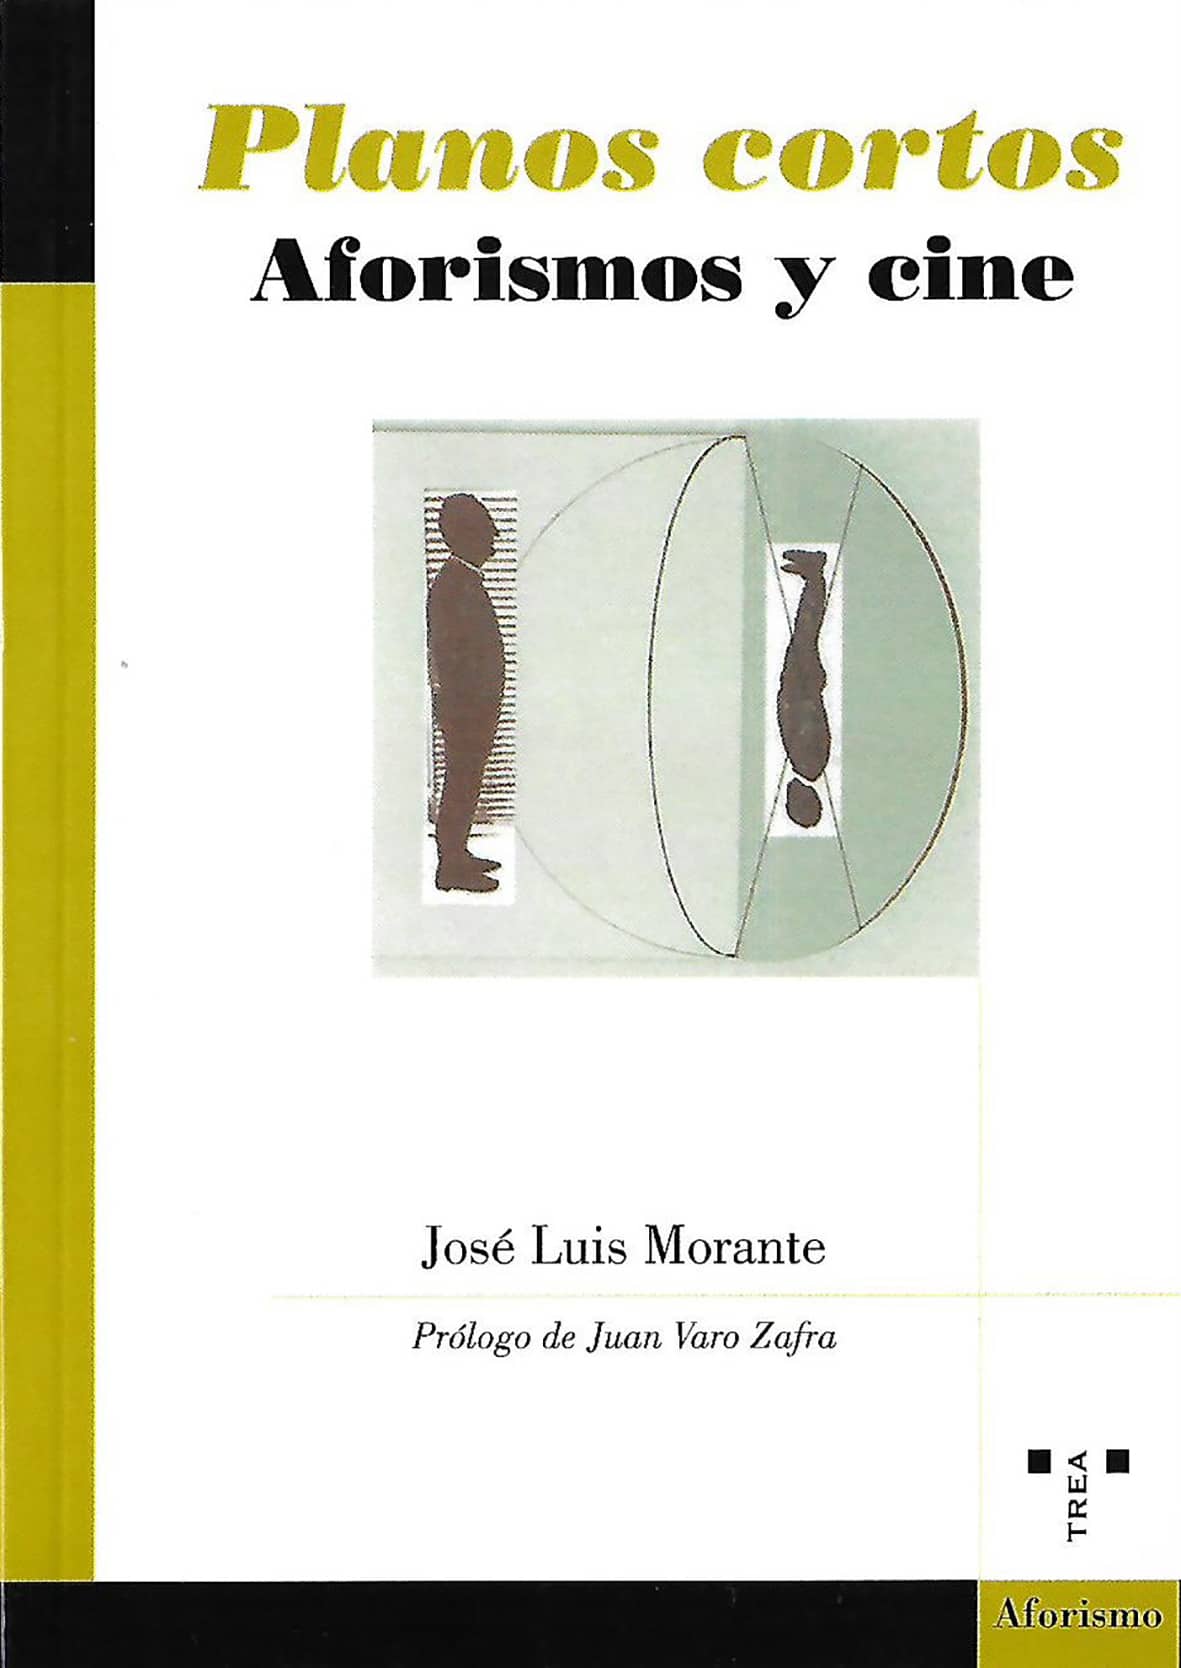 Planos cortos': José Luis Morante presenta su nuevo libro en Rivas - Diario  de Rivas